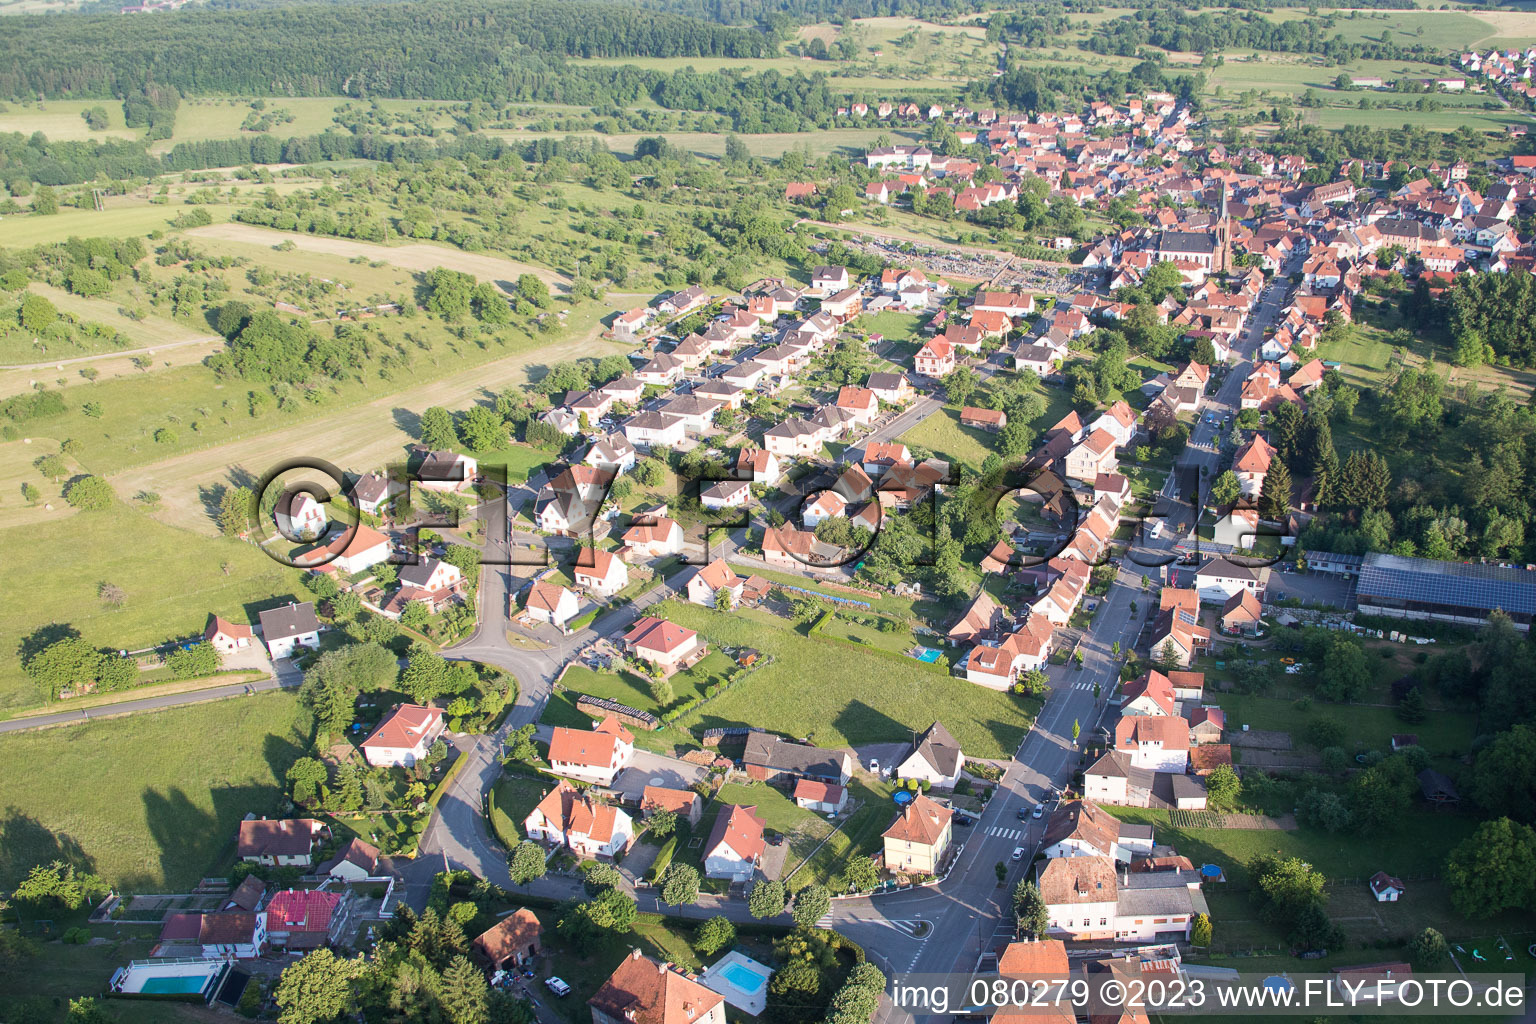 Lembach im Bundesland Bas-Rhin, Frankreich von der Drohne aus gesehen